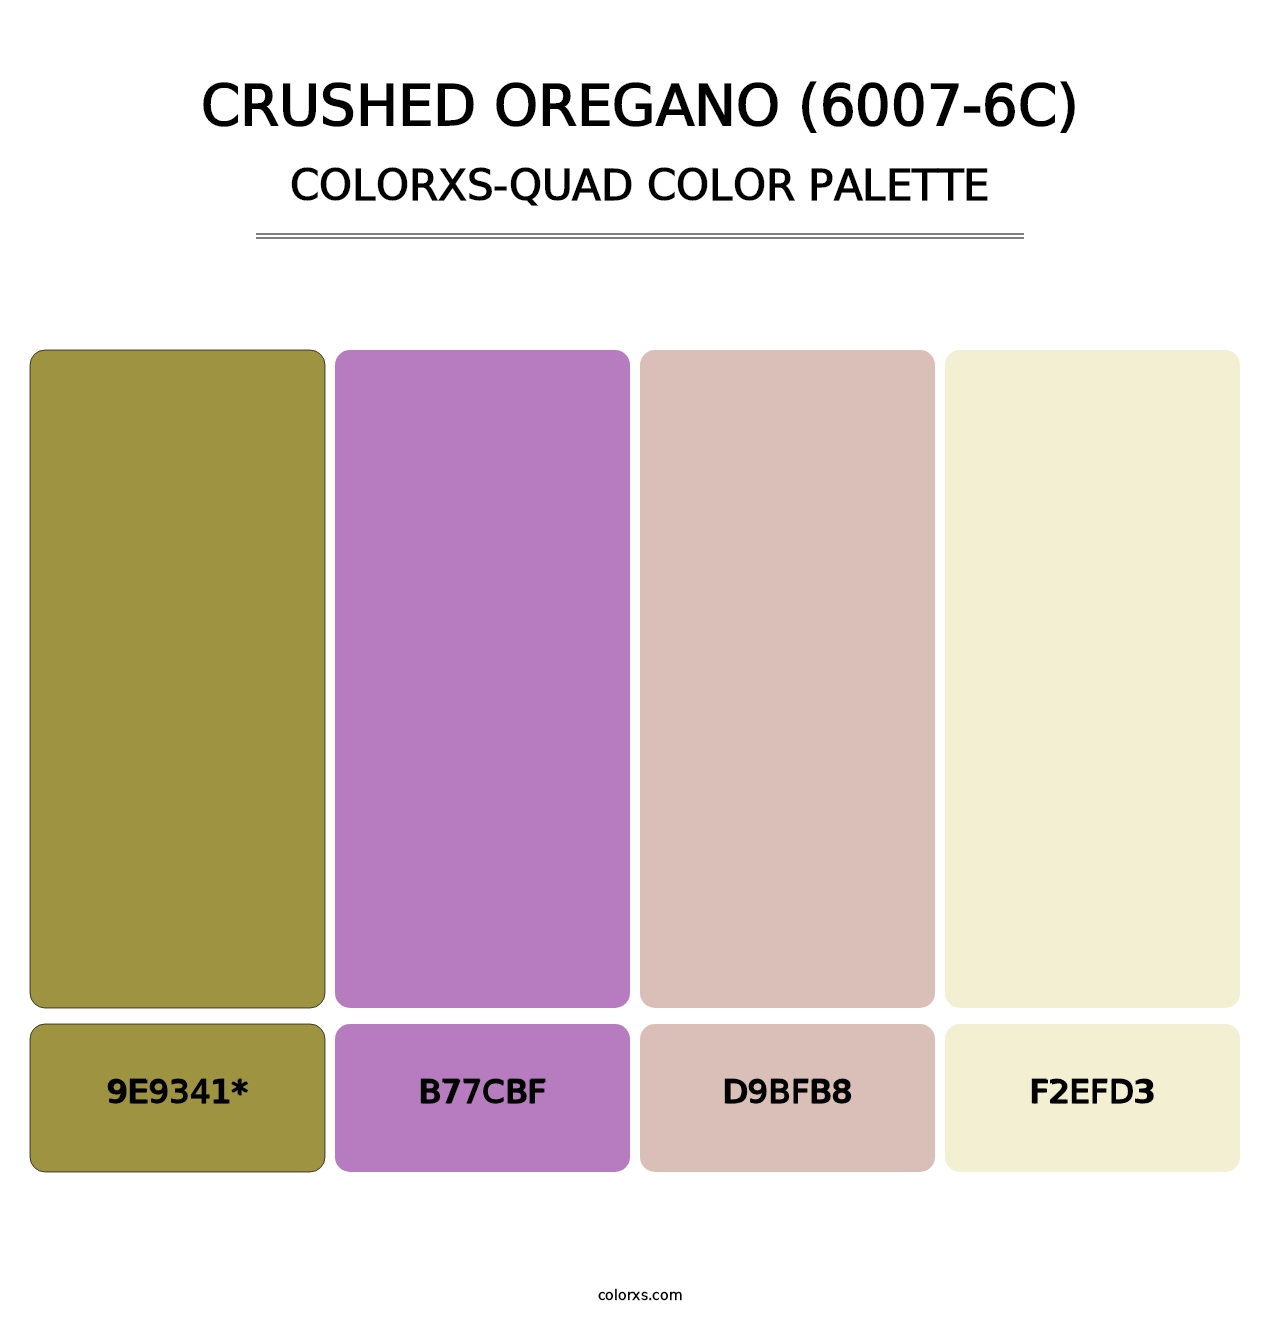 Crushed Oregano (6007-6C) - Colorxs Quad Palette